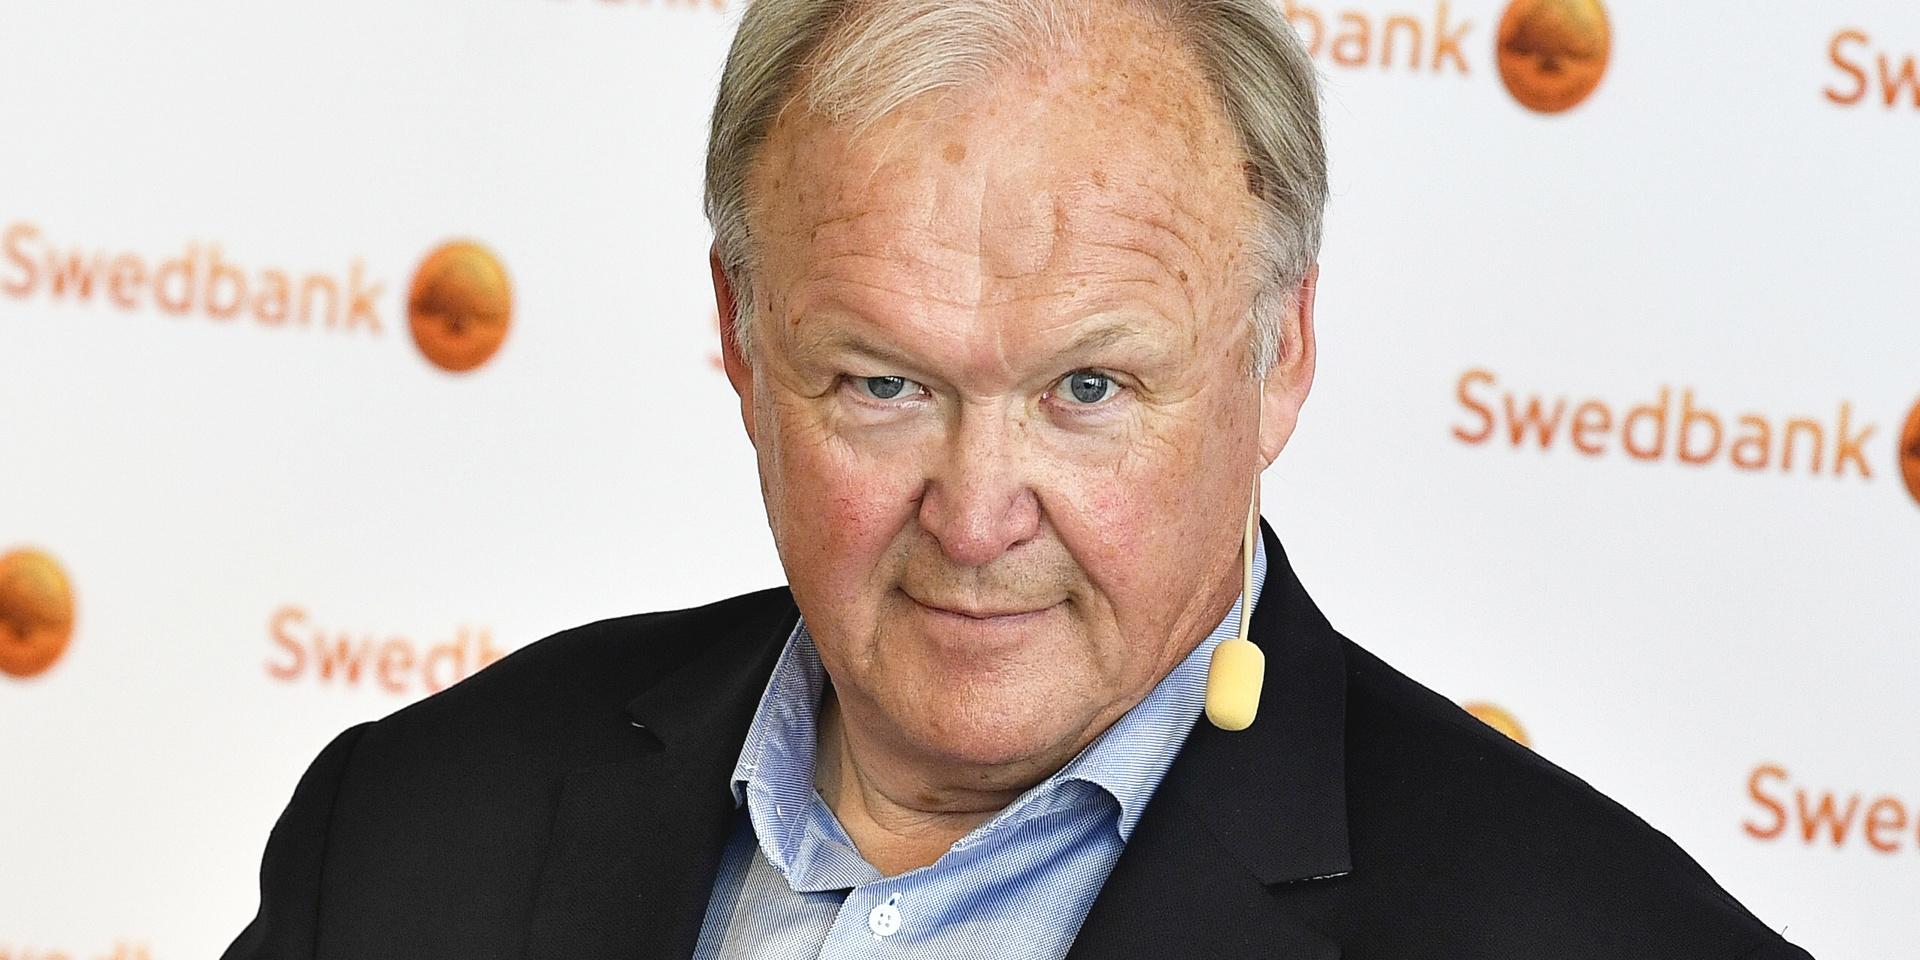 Göran Persson, socialdemokratisk statsminister 1996–2006 och ordförande i storbanken Swedbanks styrelse sedan i juni, är kritisk mot den rödgröna regeringens planer på en bankskatt. Arkivbild